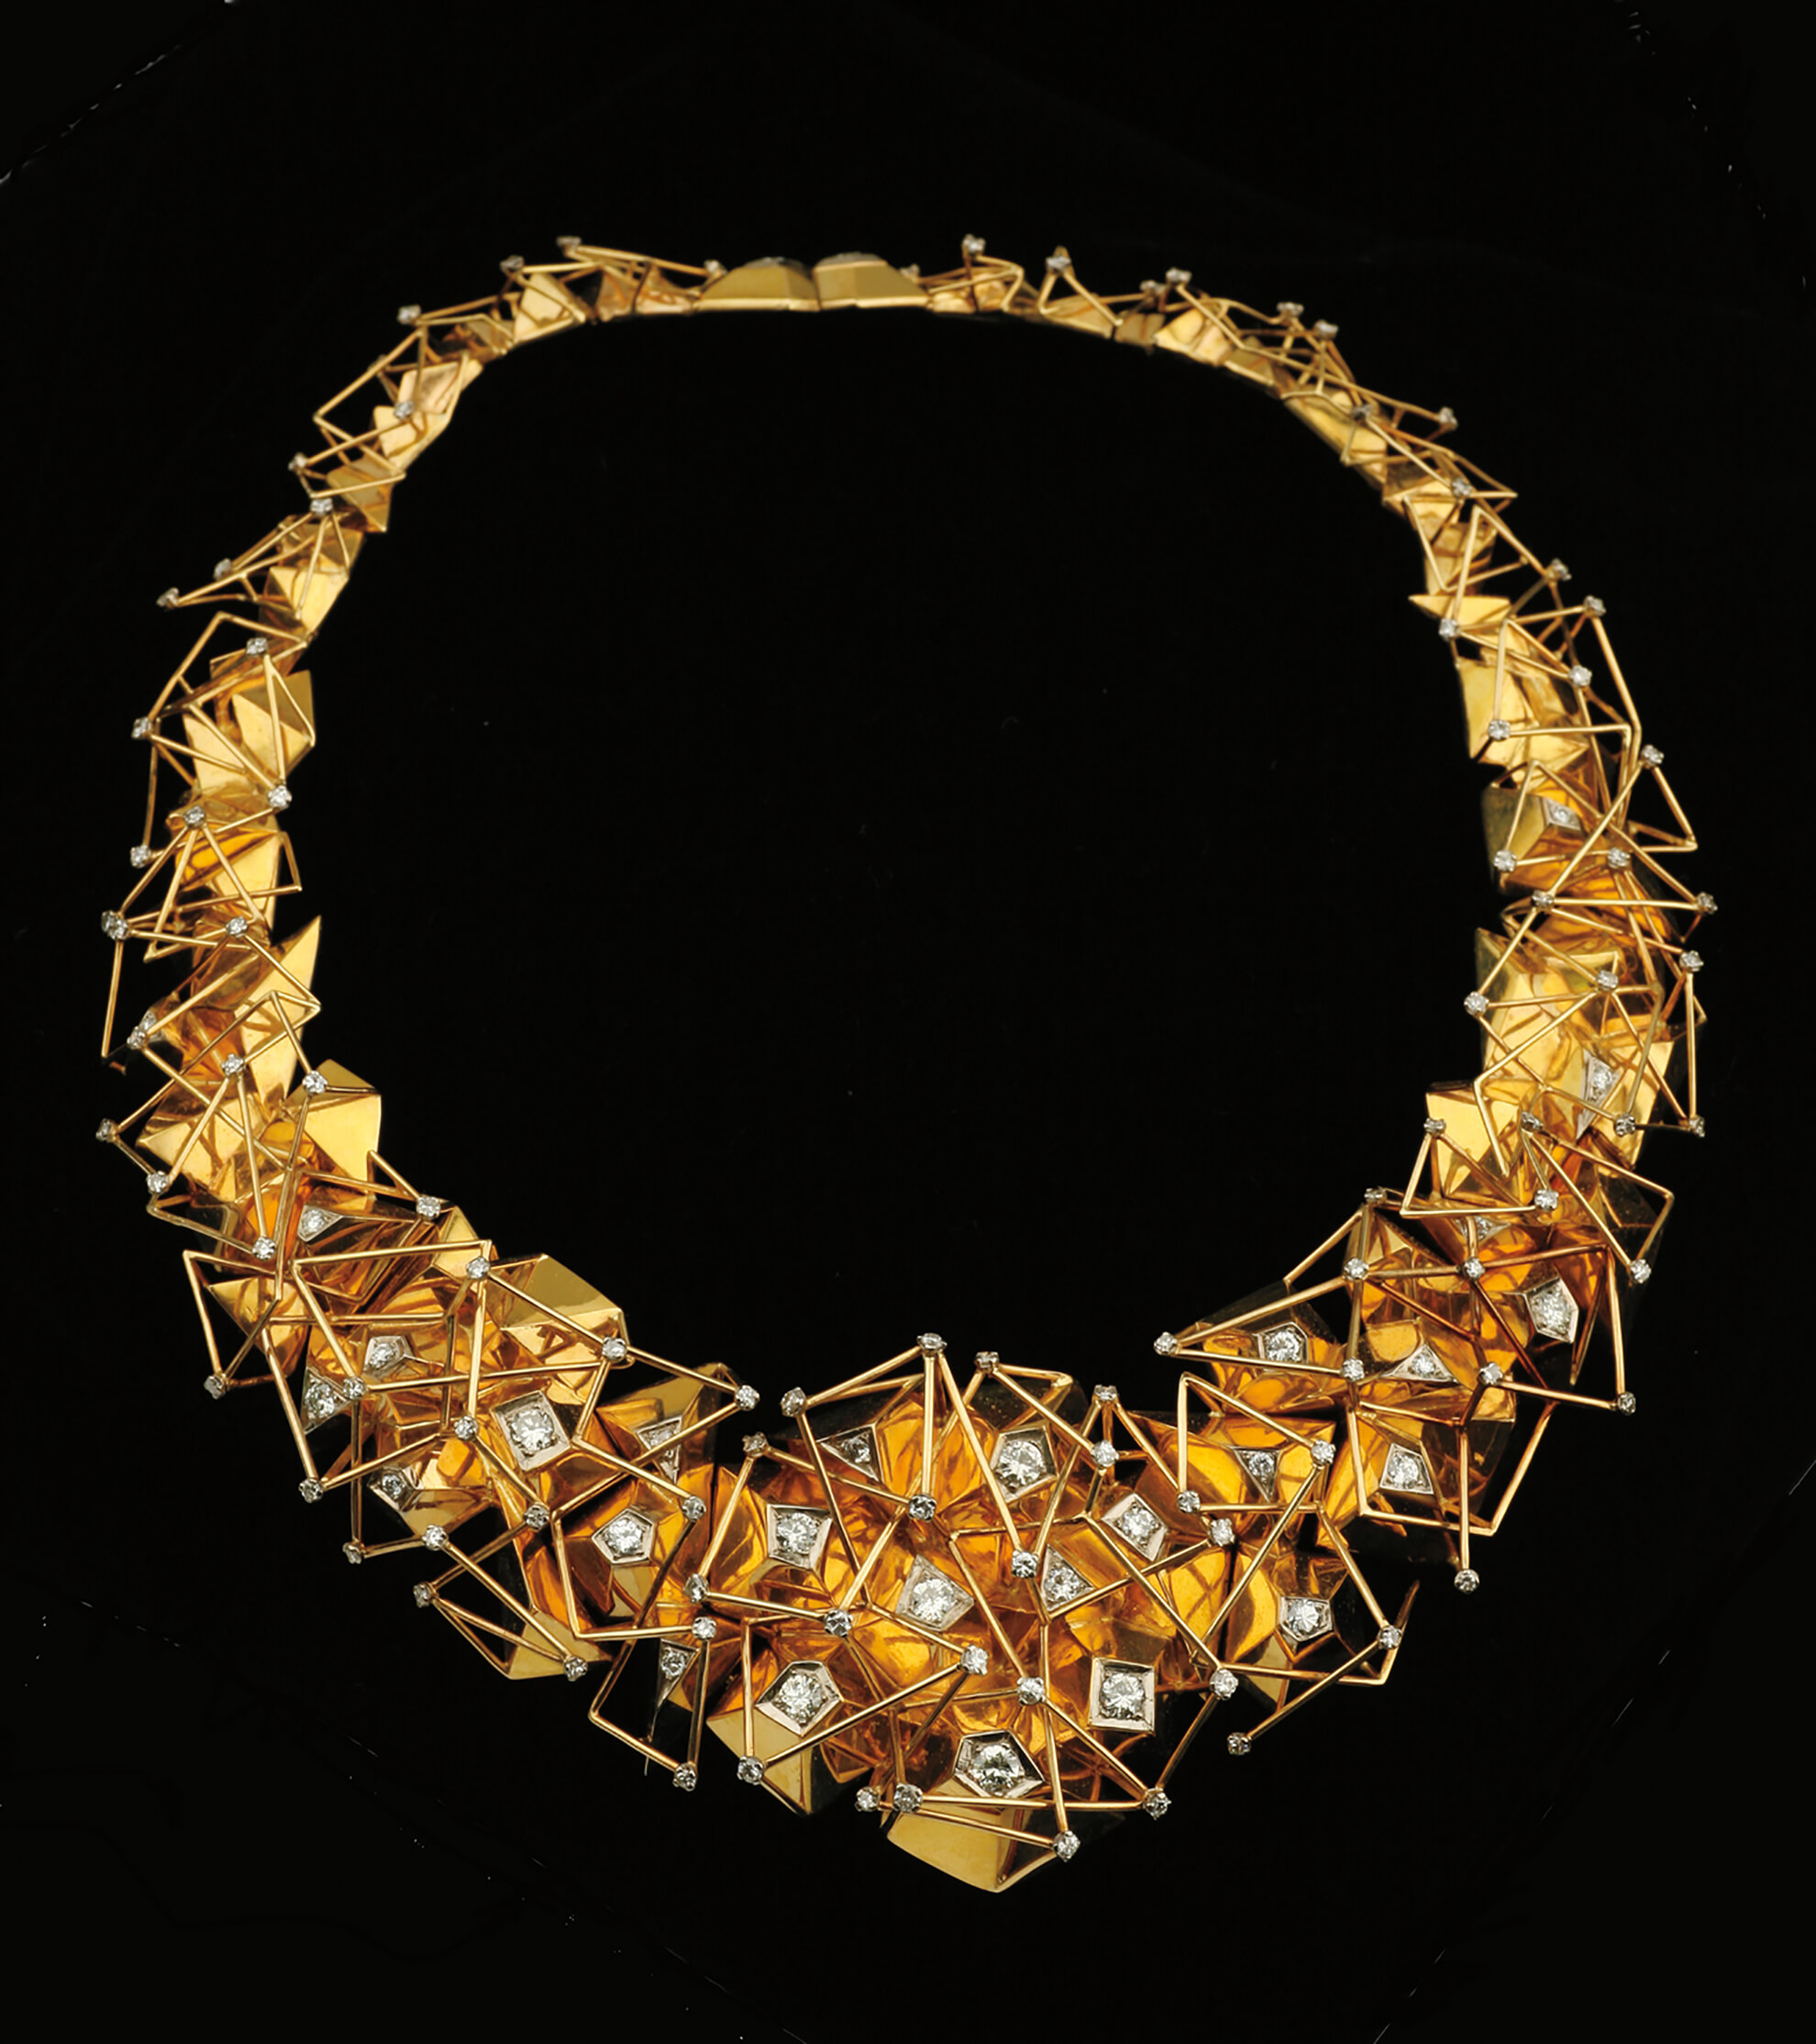 Milky Way Necklace, 1969